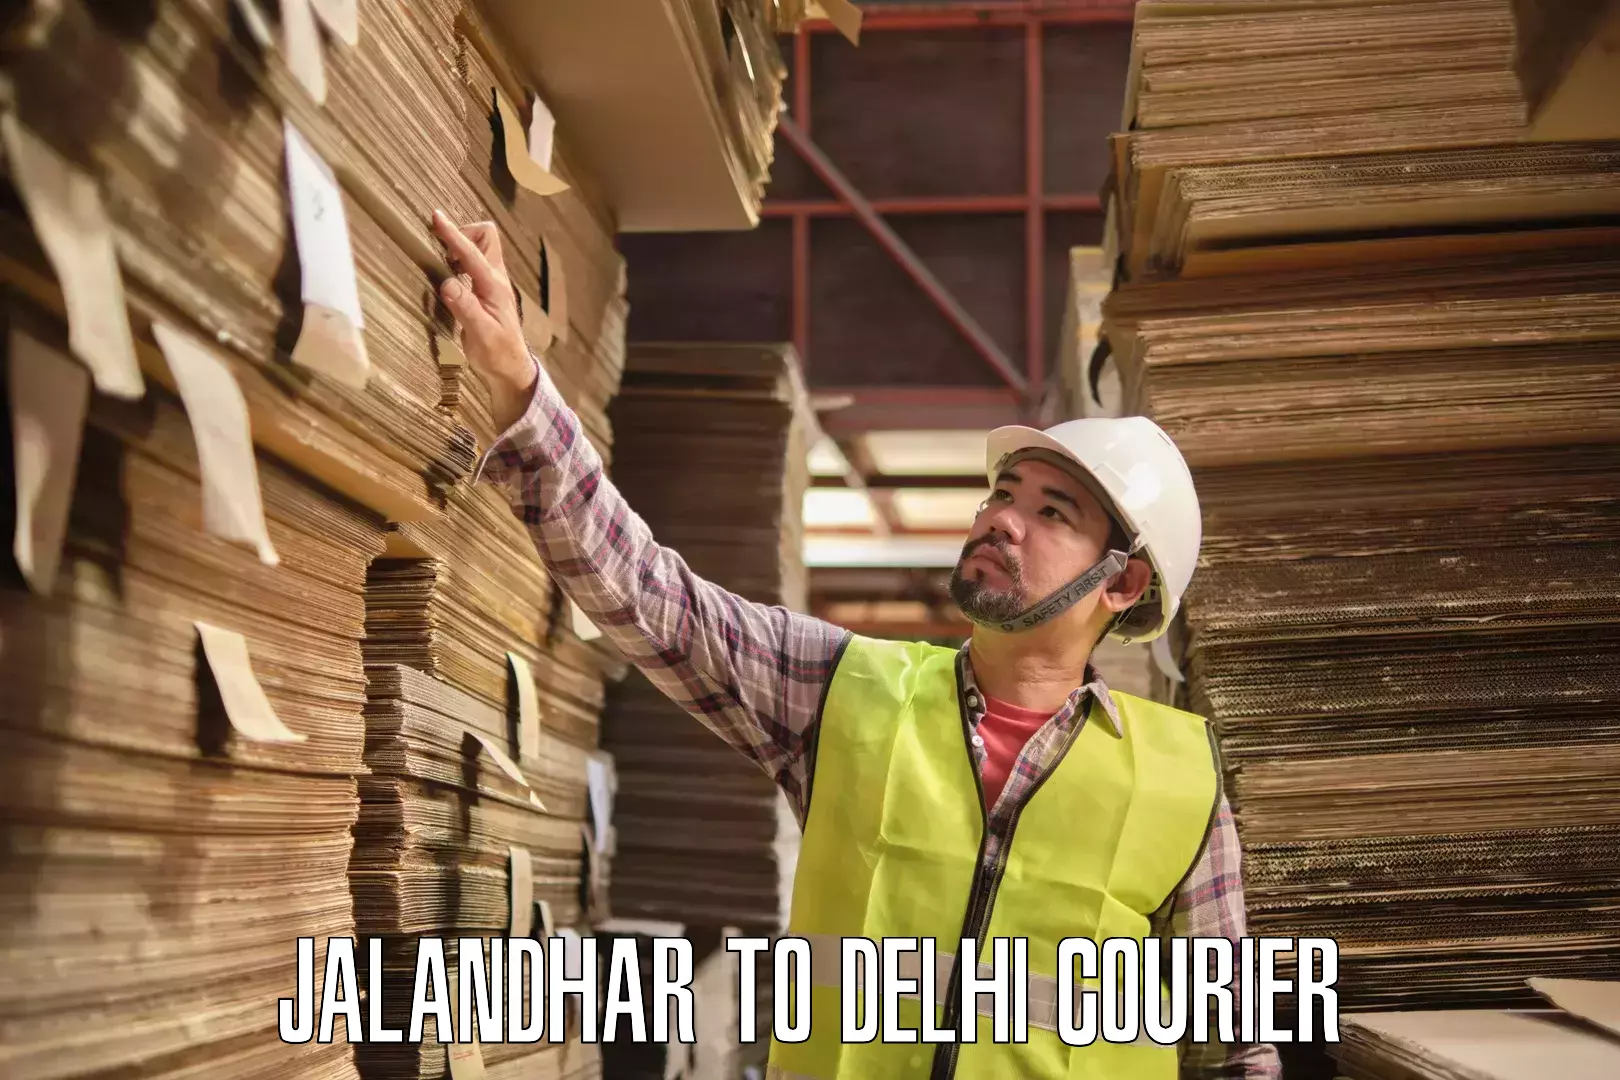 High-capacity parcel service Jalandhar to Sarojini Nagar